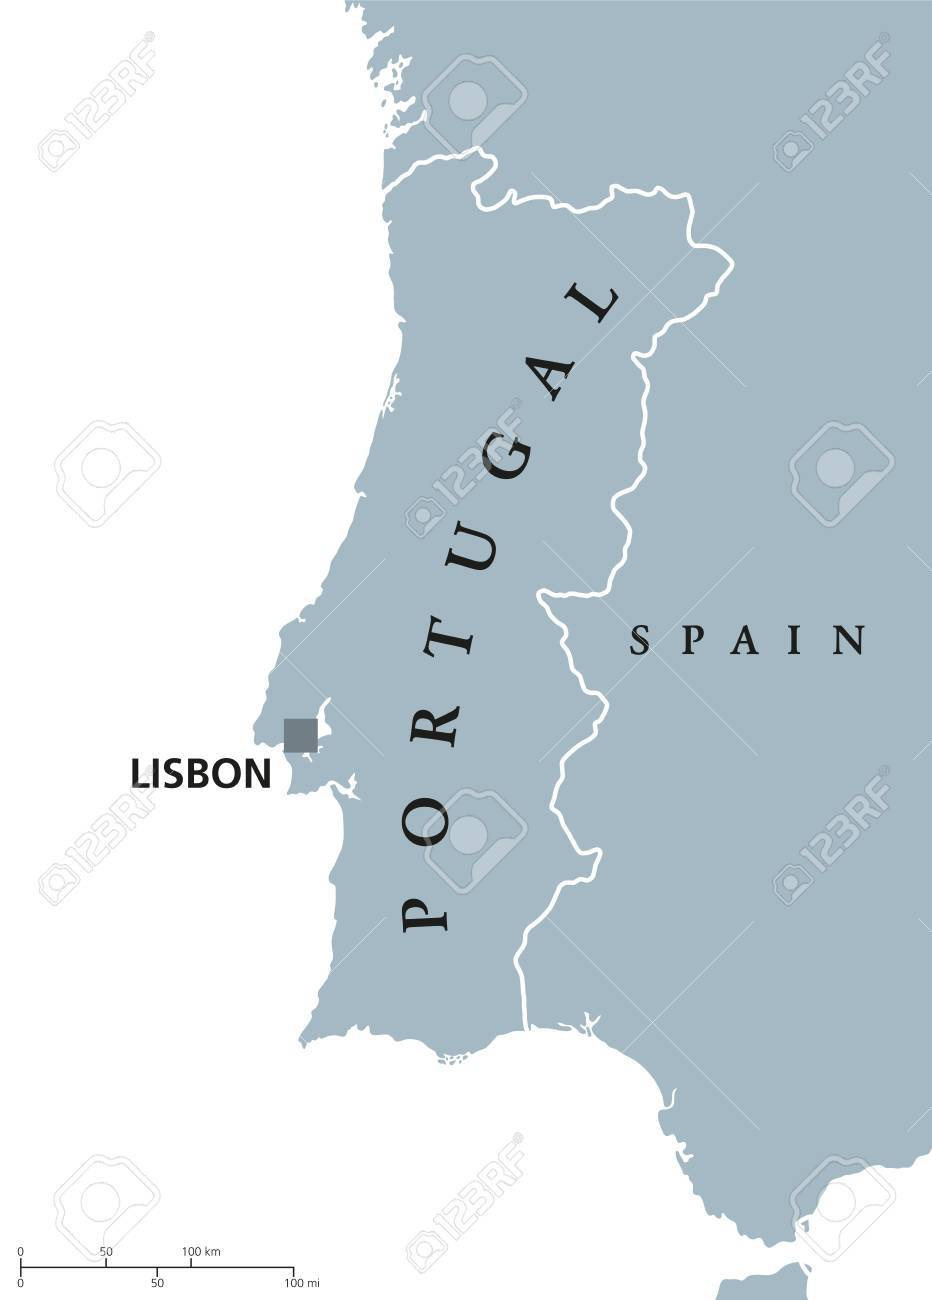 Carte Politique Du Portugal Avec La Capitale Lisbonne Et Les Pays Voisins.  République Sur La Péninsule Ibérique Dans Le Sud-Ouest De L'europe. intérieur Carte Europe Capitale